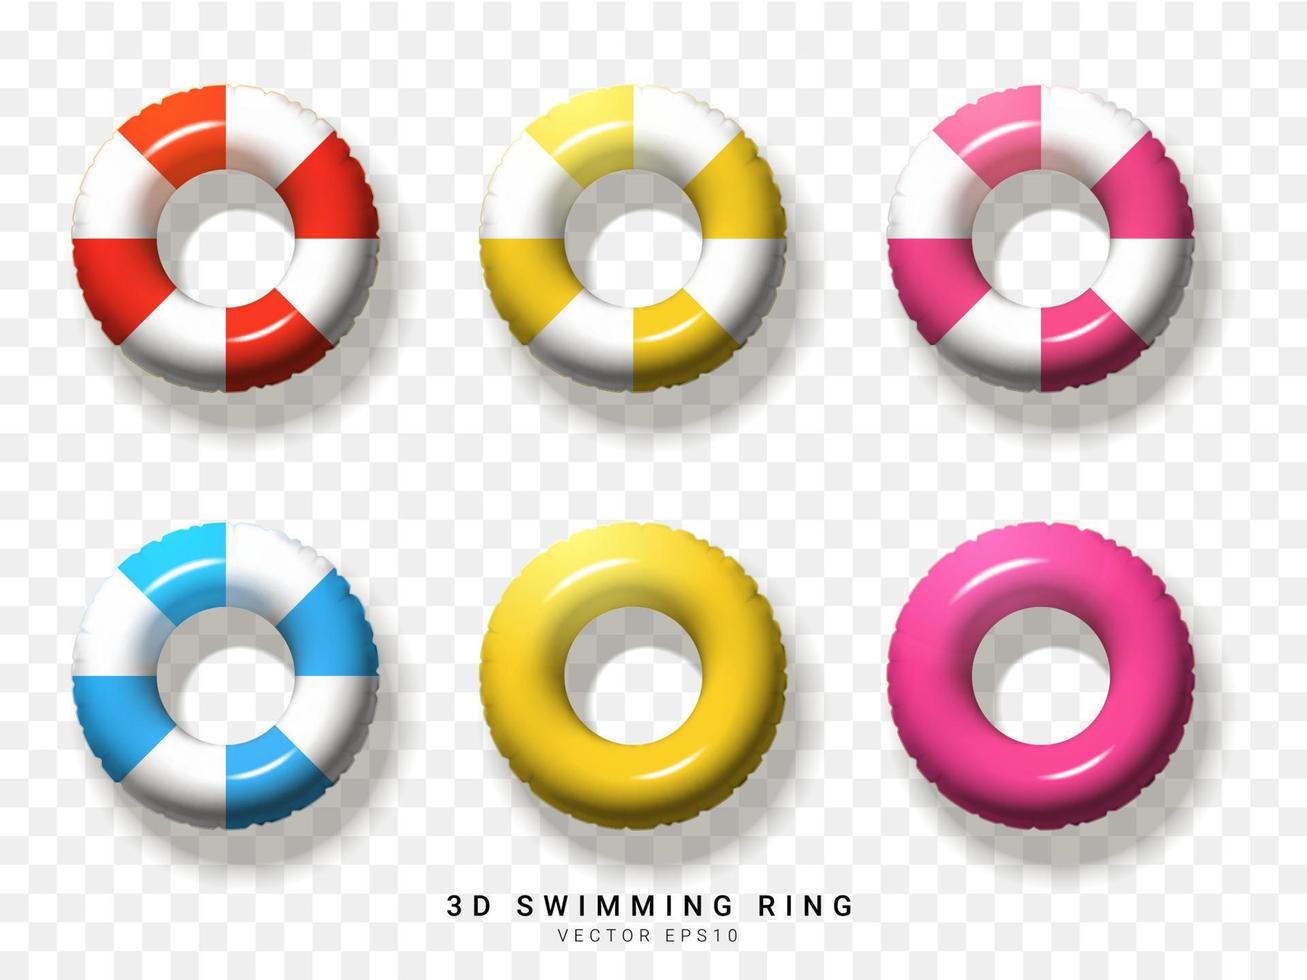 vermelho, amarelo, rosa, azul, branco, de elemento de anel de natação 3d em fundo transparente. ilustração vetorial vetor